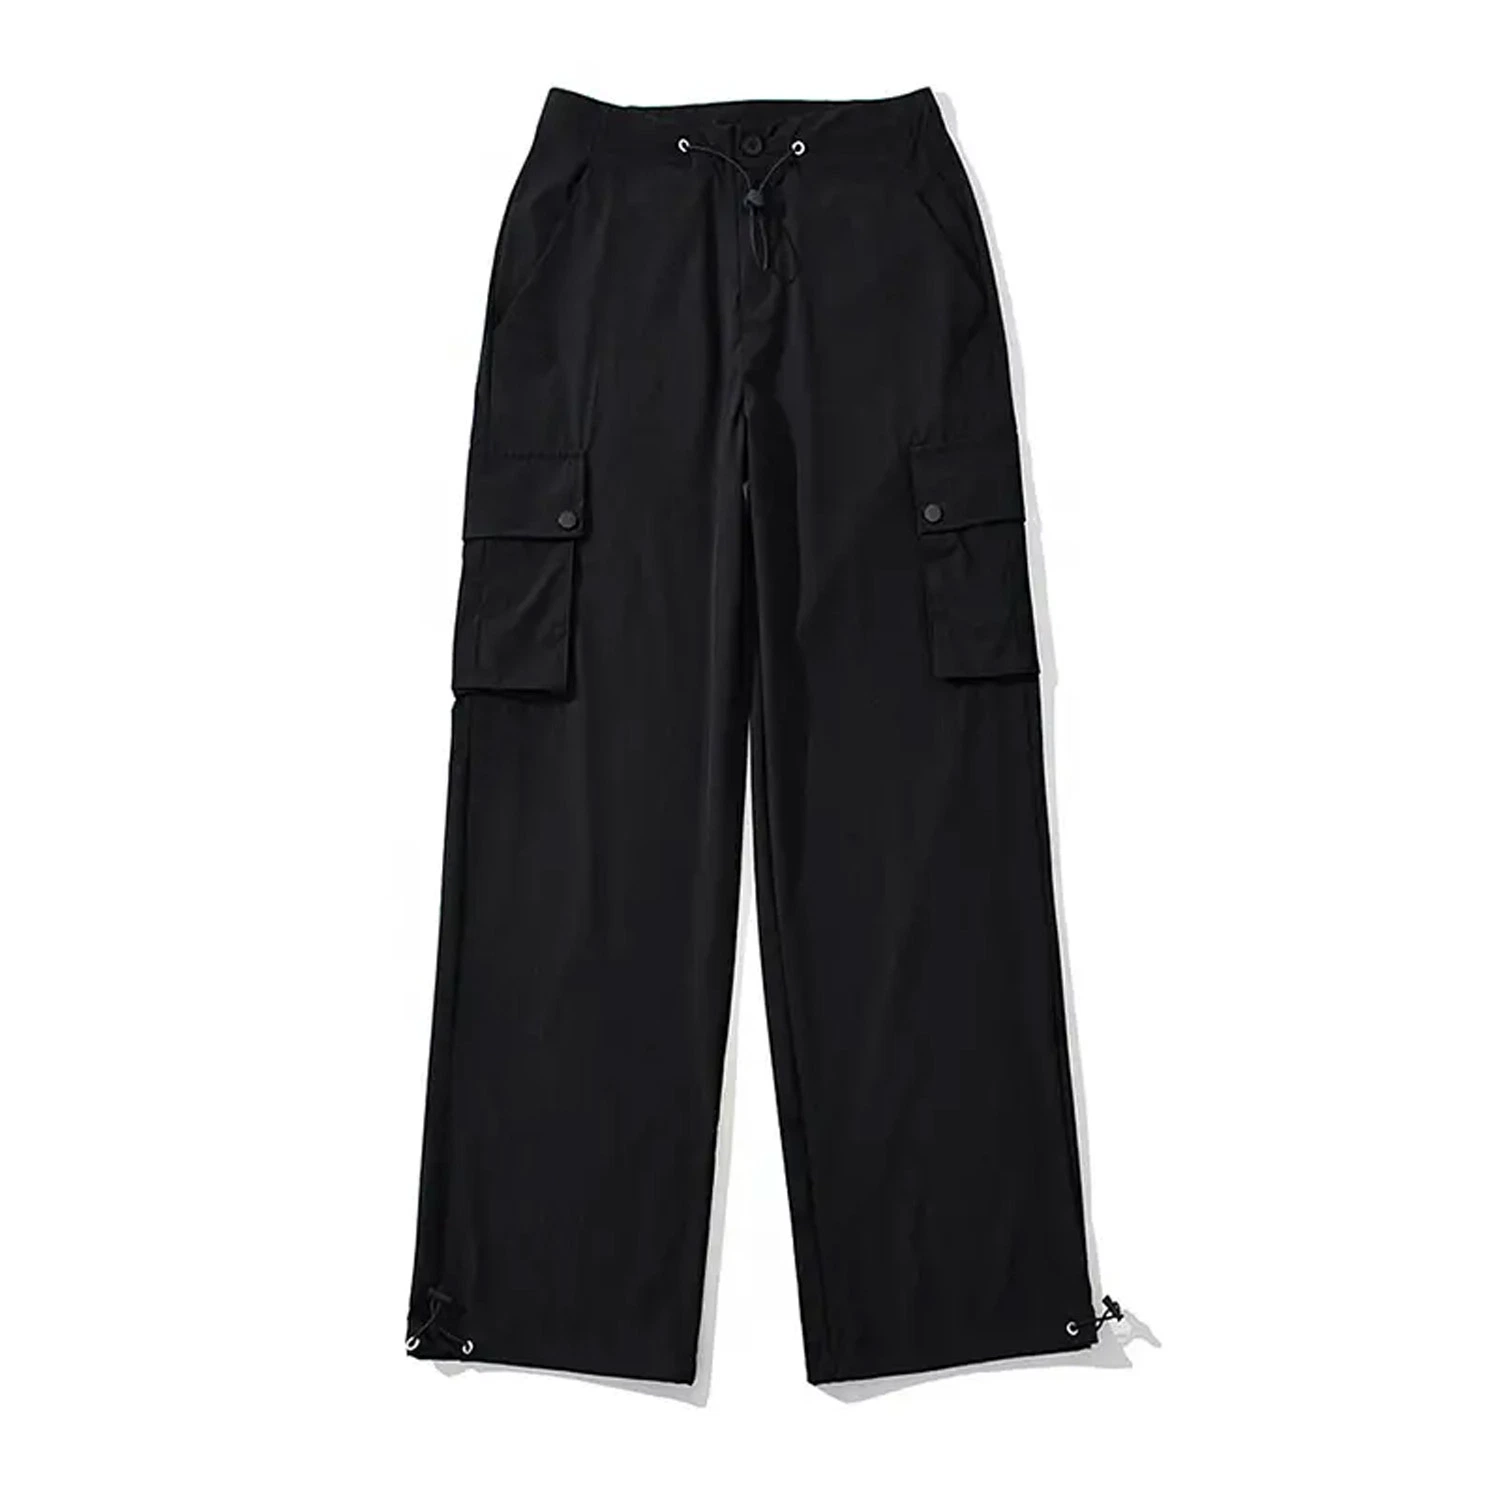 Mujeres Loose Moda elegante cordón ajustable cintura Windproof Ocio pantalones cargo Con bolsillos